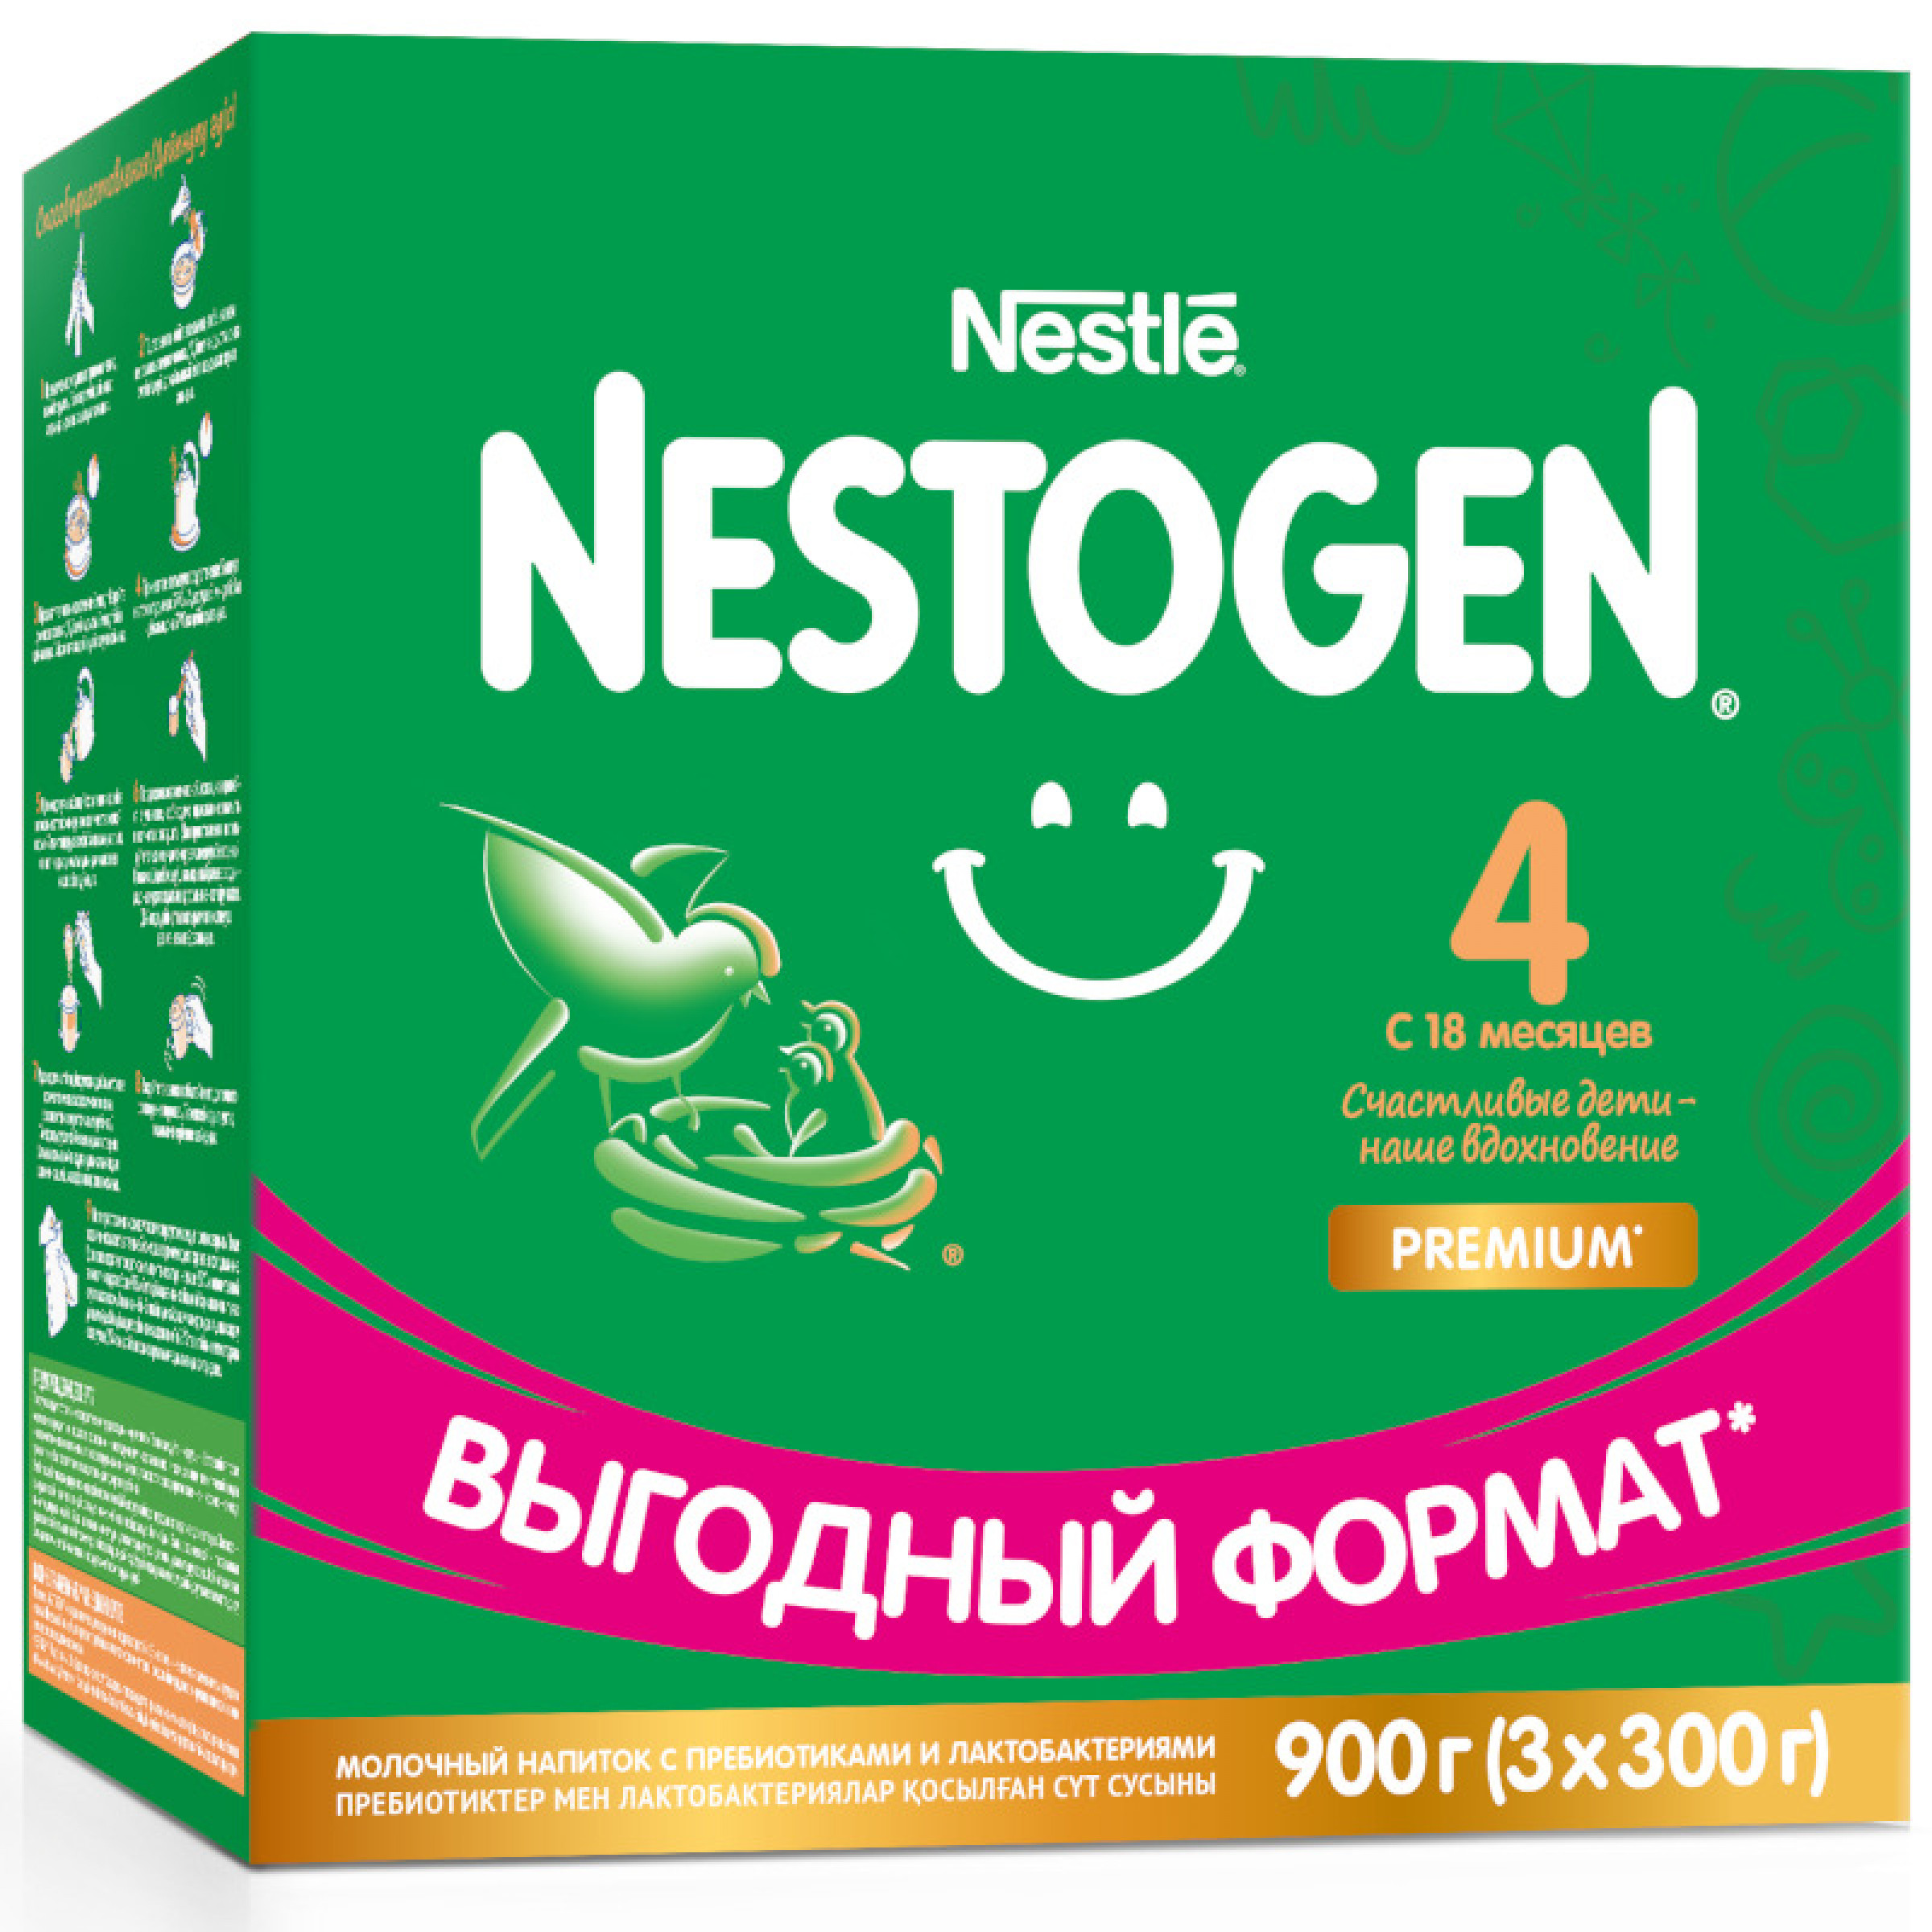 Сухой молочный напиток Nestogen 4 с 18 месяцев с пребиотиками и лактобактериями 900 г